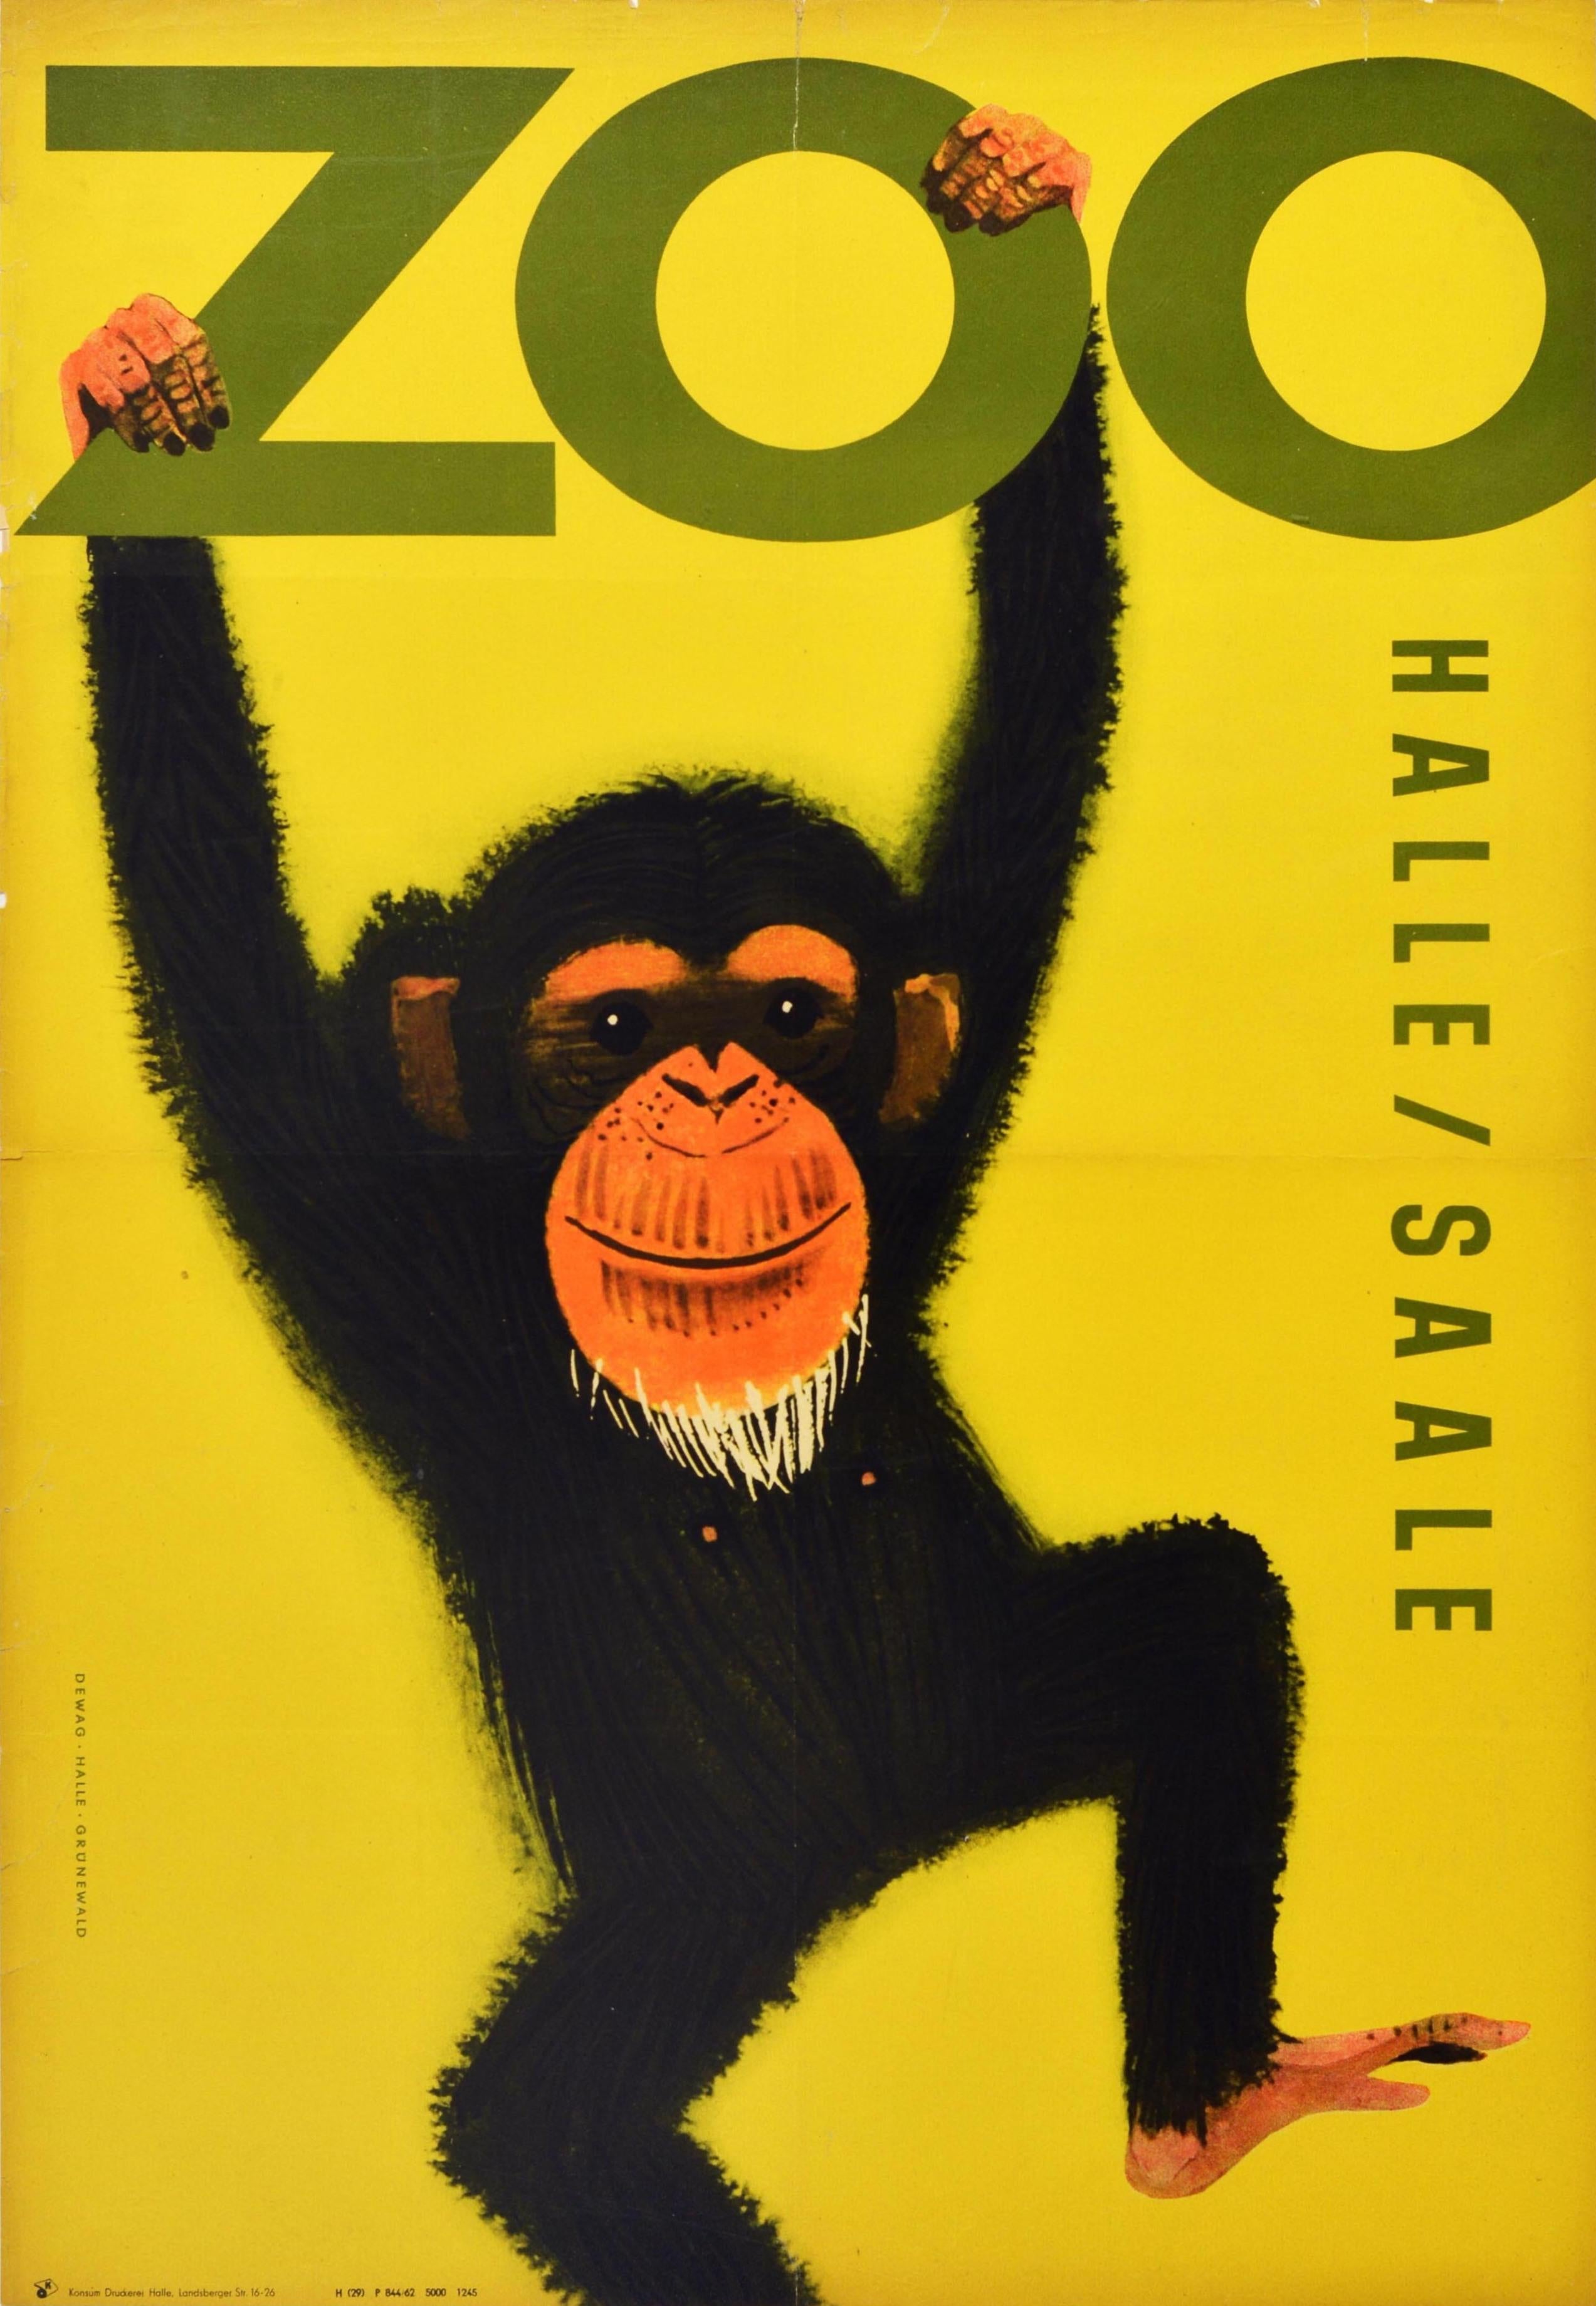 Affiche de voyage vintage originale pour le Zoo de Halle / Saale présentant une illustration amusante et colorée d'un chimpanzé suspendu au mot Zoo sur un fond jaune. Ouvert en 1901, le zoo de Halle est situé dans la région montagneuse de Saxe